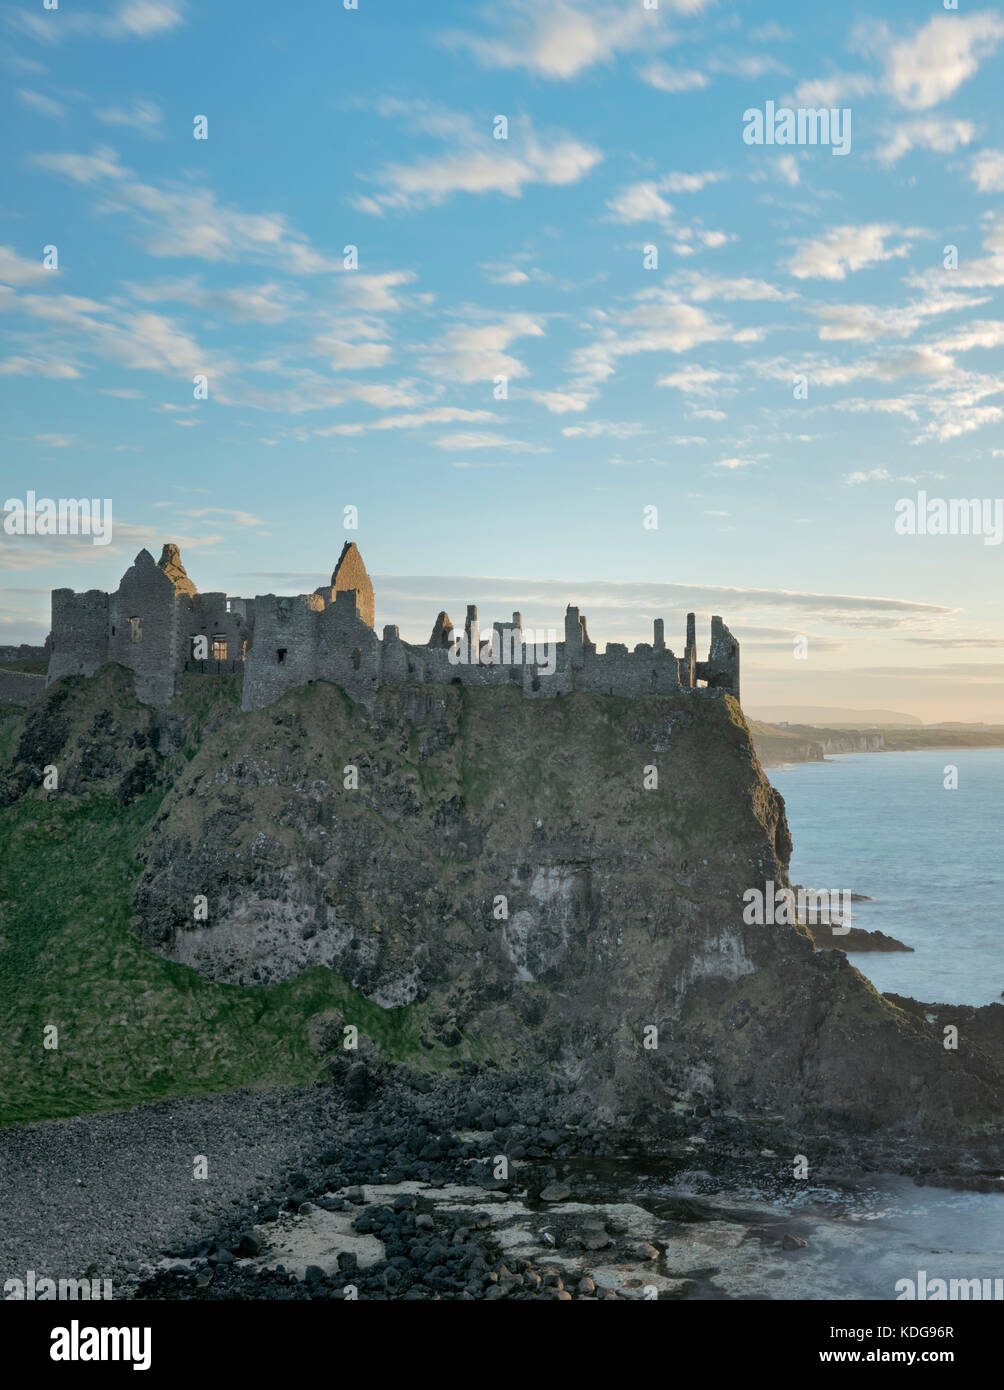 Le château de dunluce, au coucher du soleil. L'Irlande du Nord. Banque D'Images